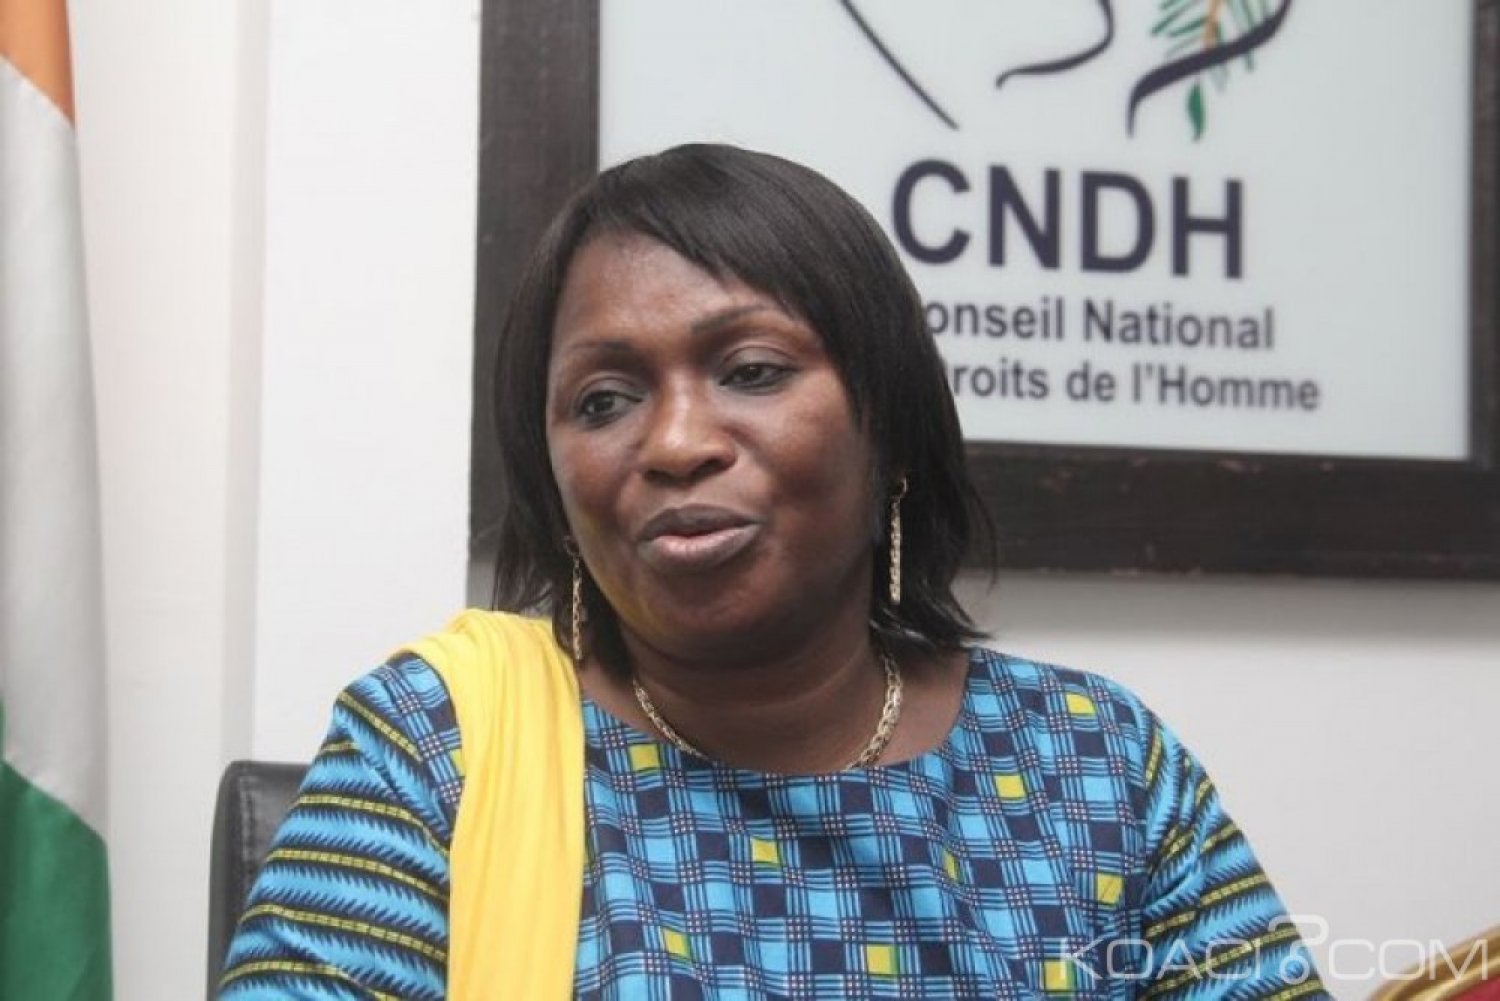 Côte d'Ivoire : Abidjan, CNDH, le Gouvernement entérine l'élection de la Présidente, de la Vice-présidente et du Secrétaire exécutif